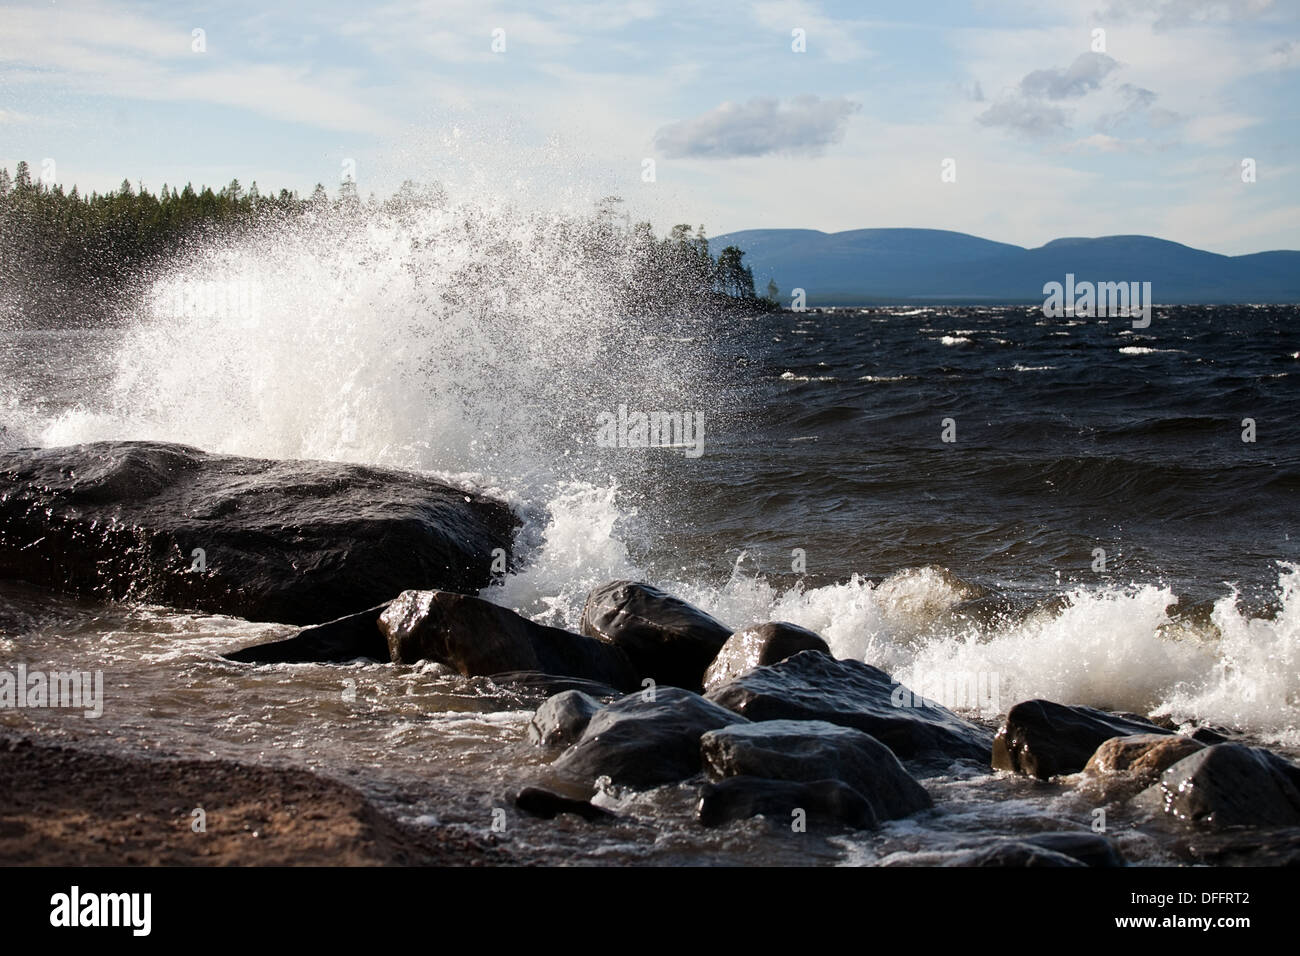 big wave with white foam splashes on stone sea shore background Stock Photo